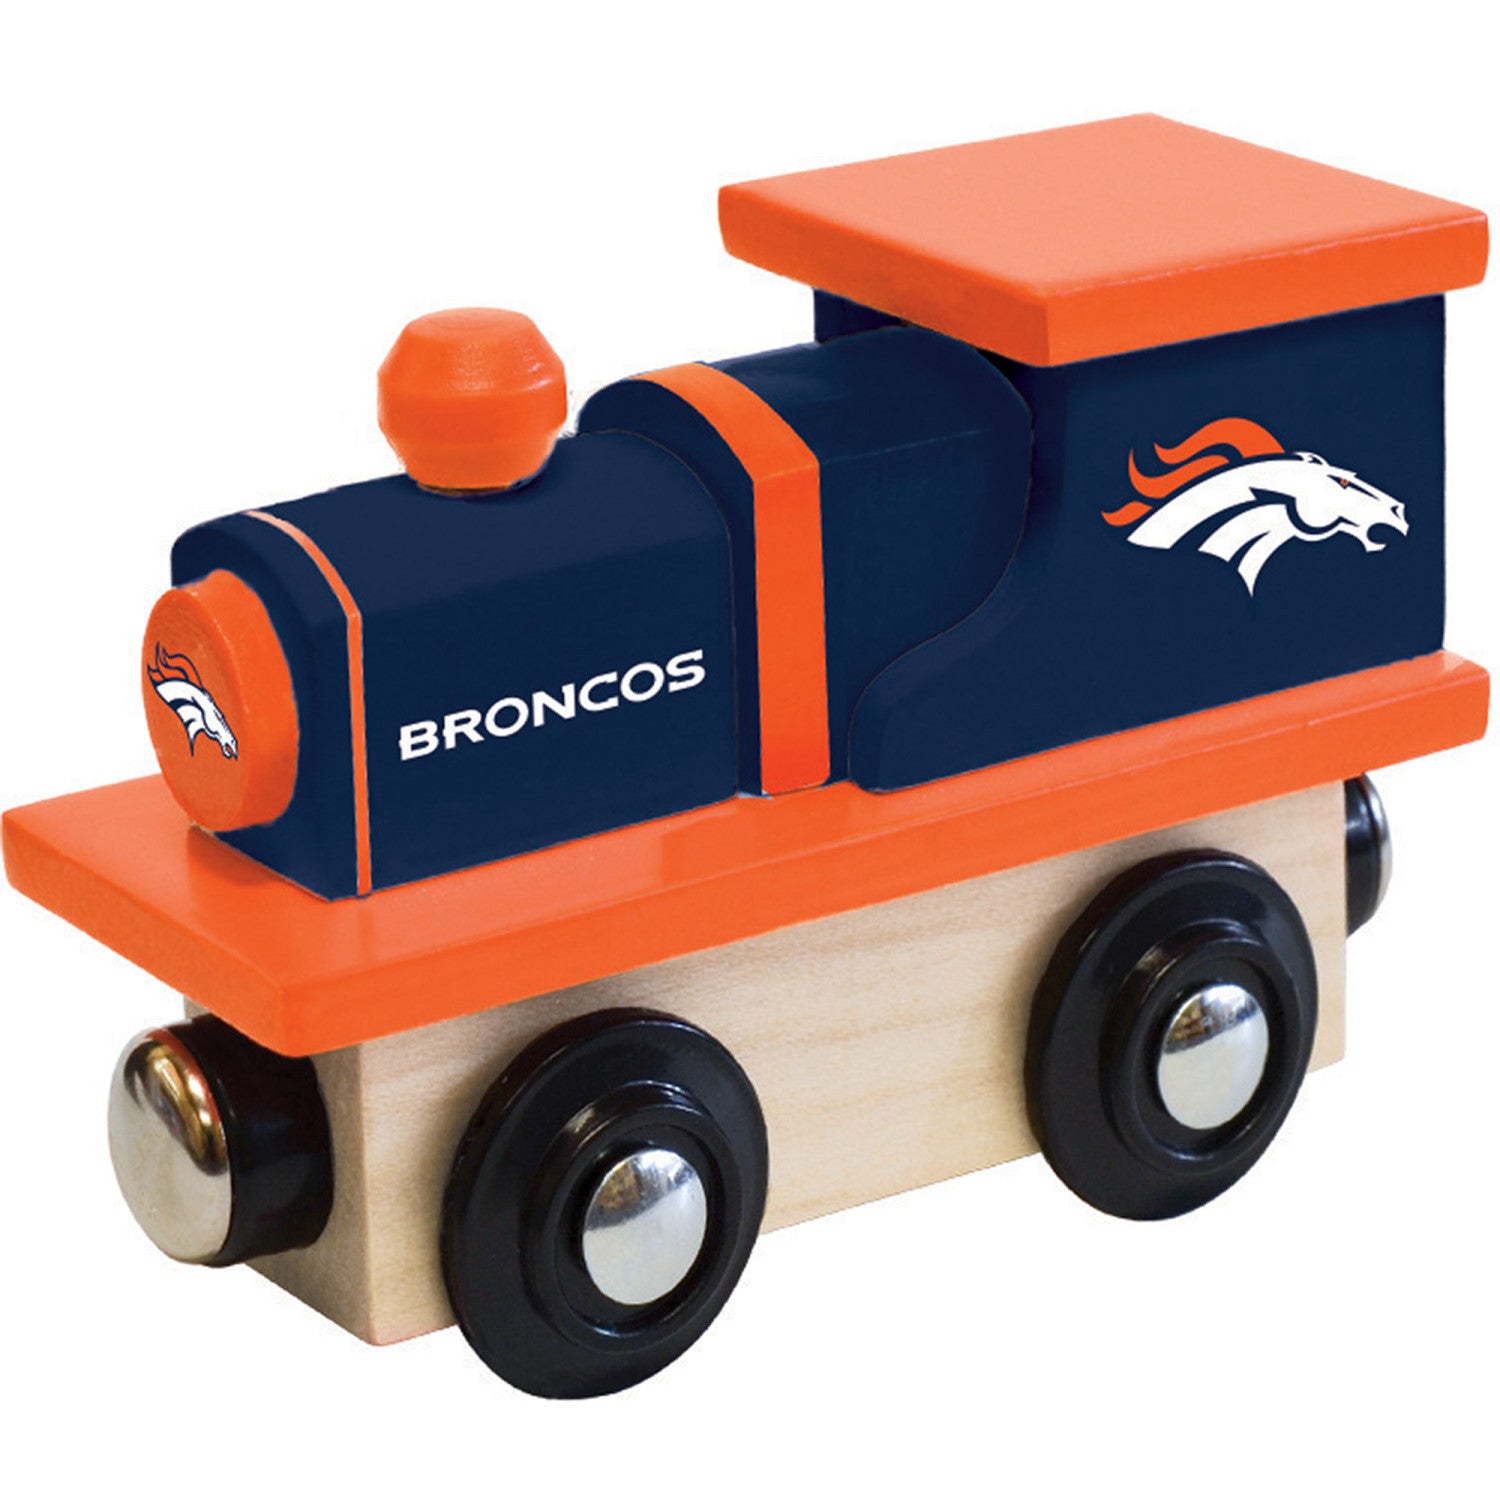 Denver Broncos Toy Train Engine